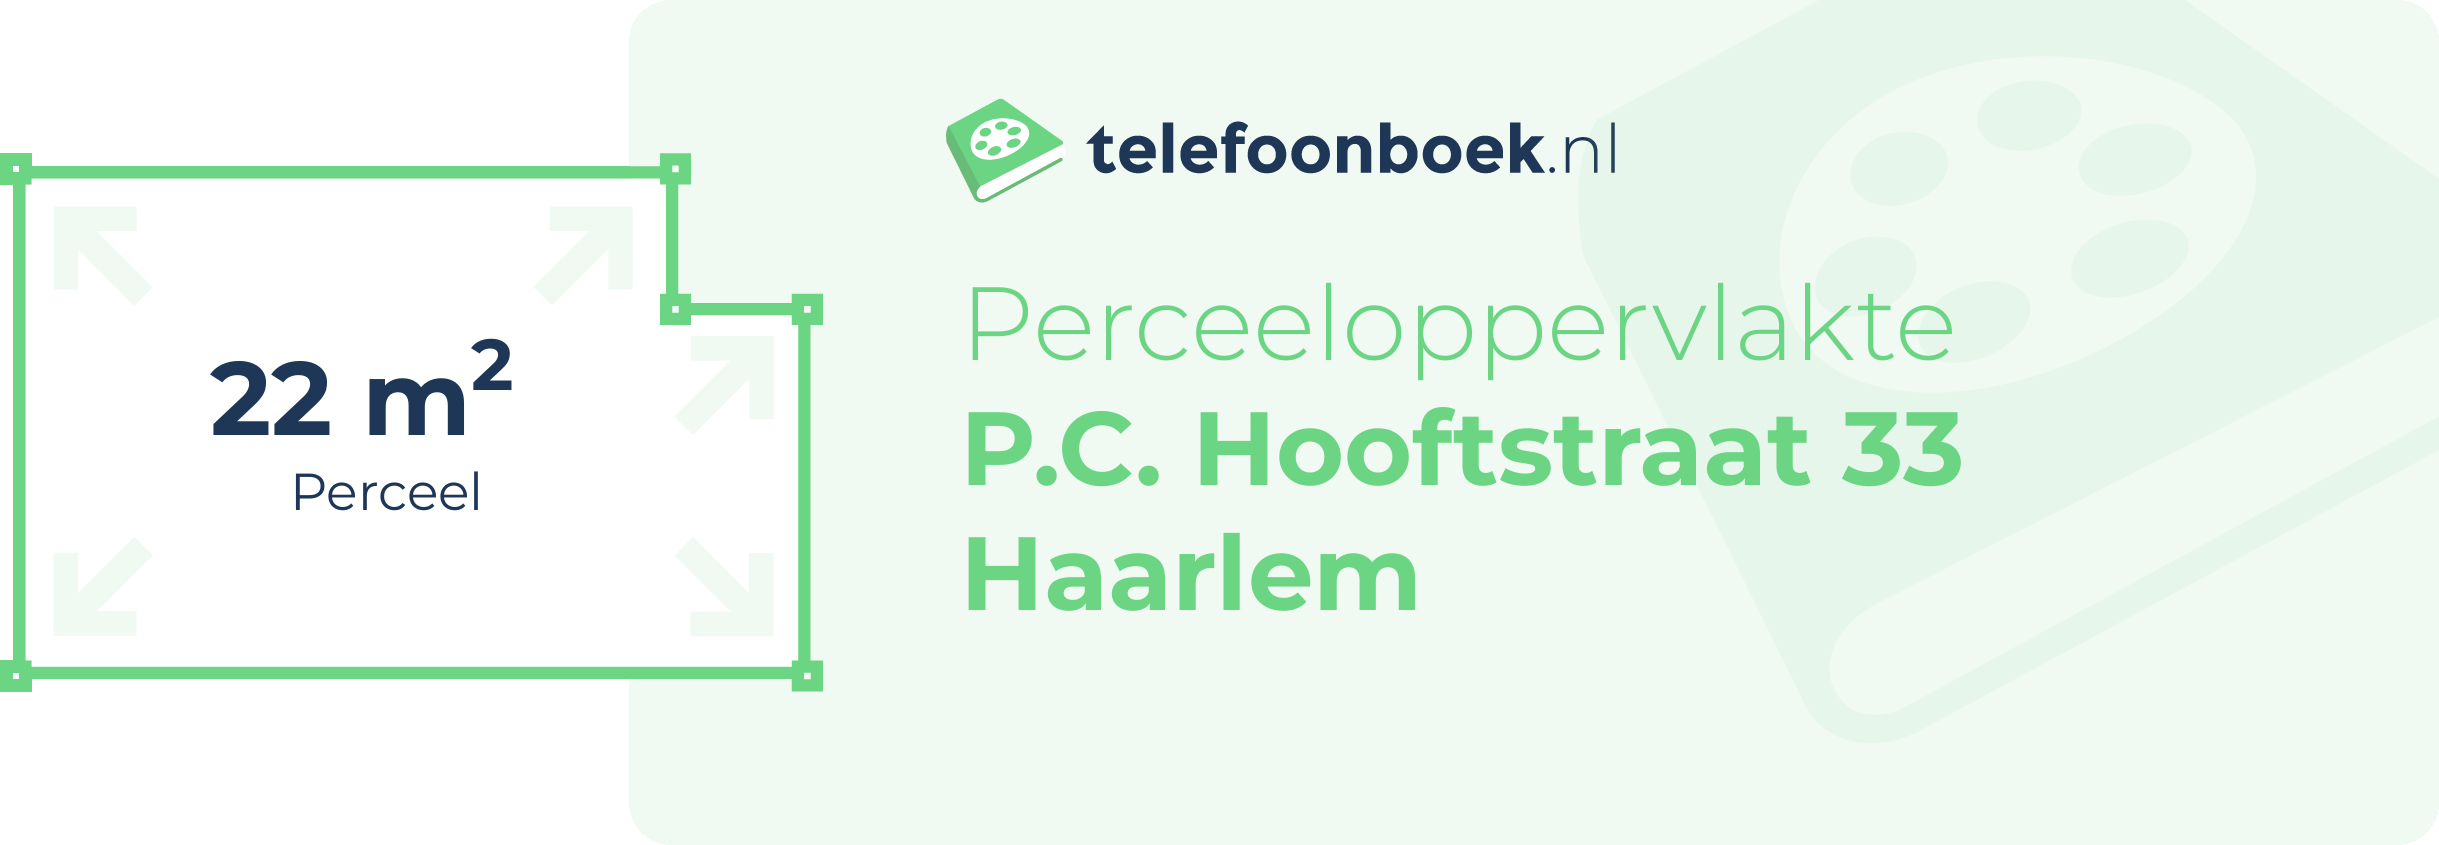 Perceeloppervlakte P.C. Hooftstraat 33 Haarlem